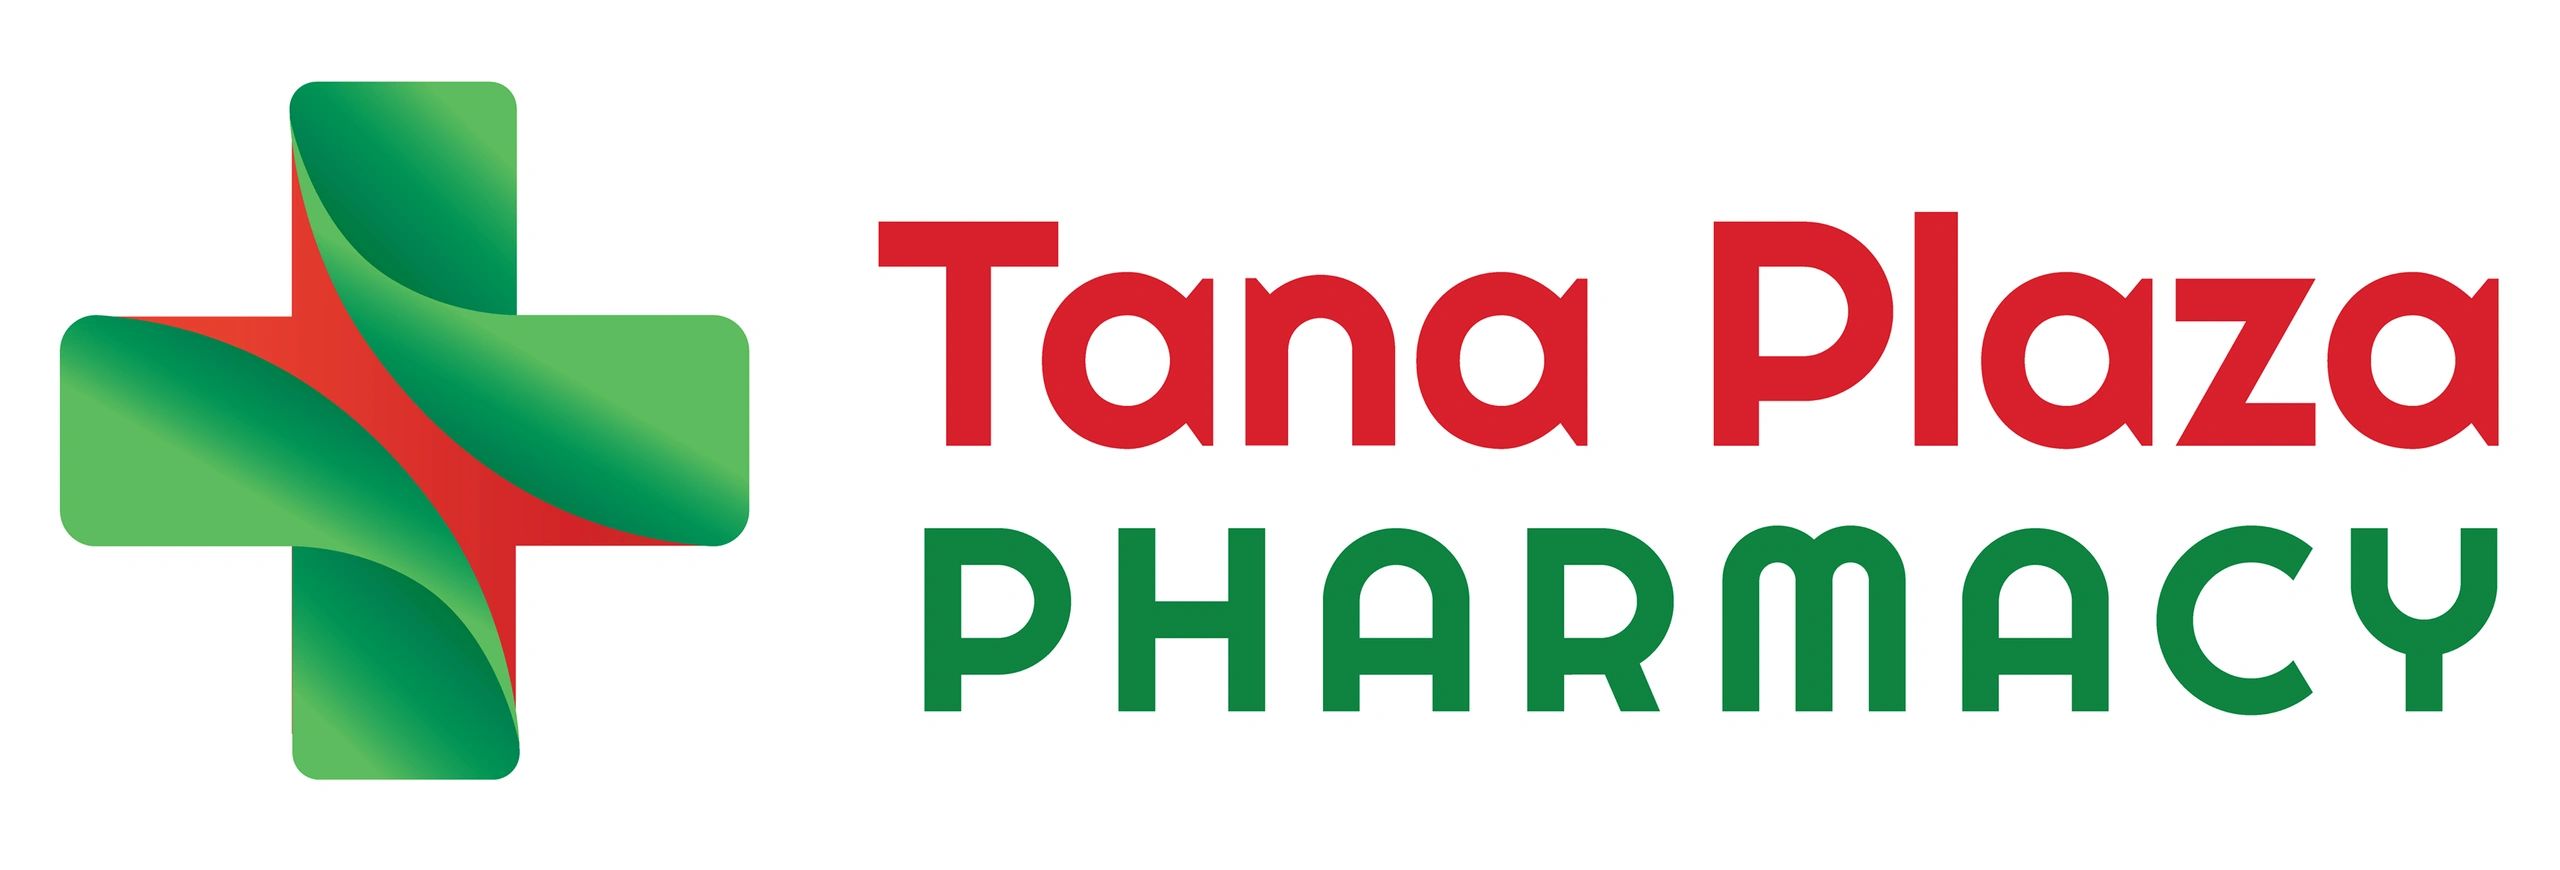 TanaPlaza
Pharmacy